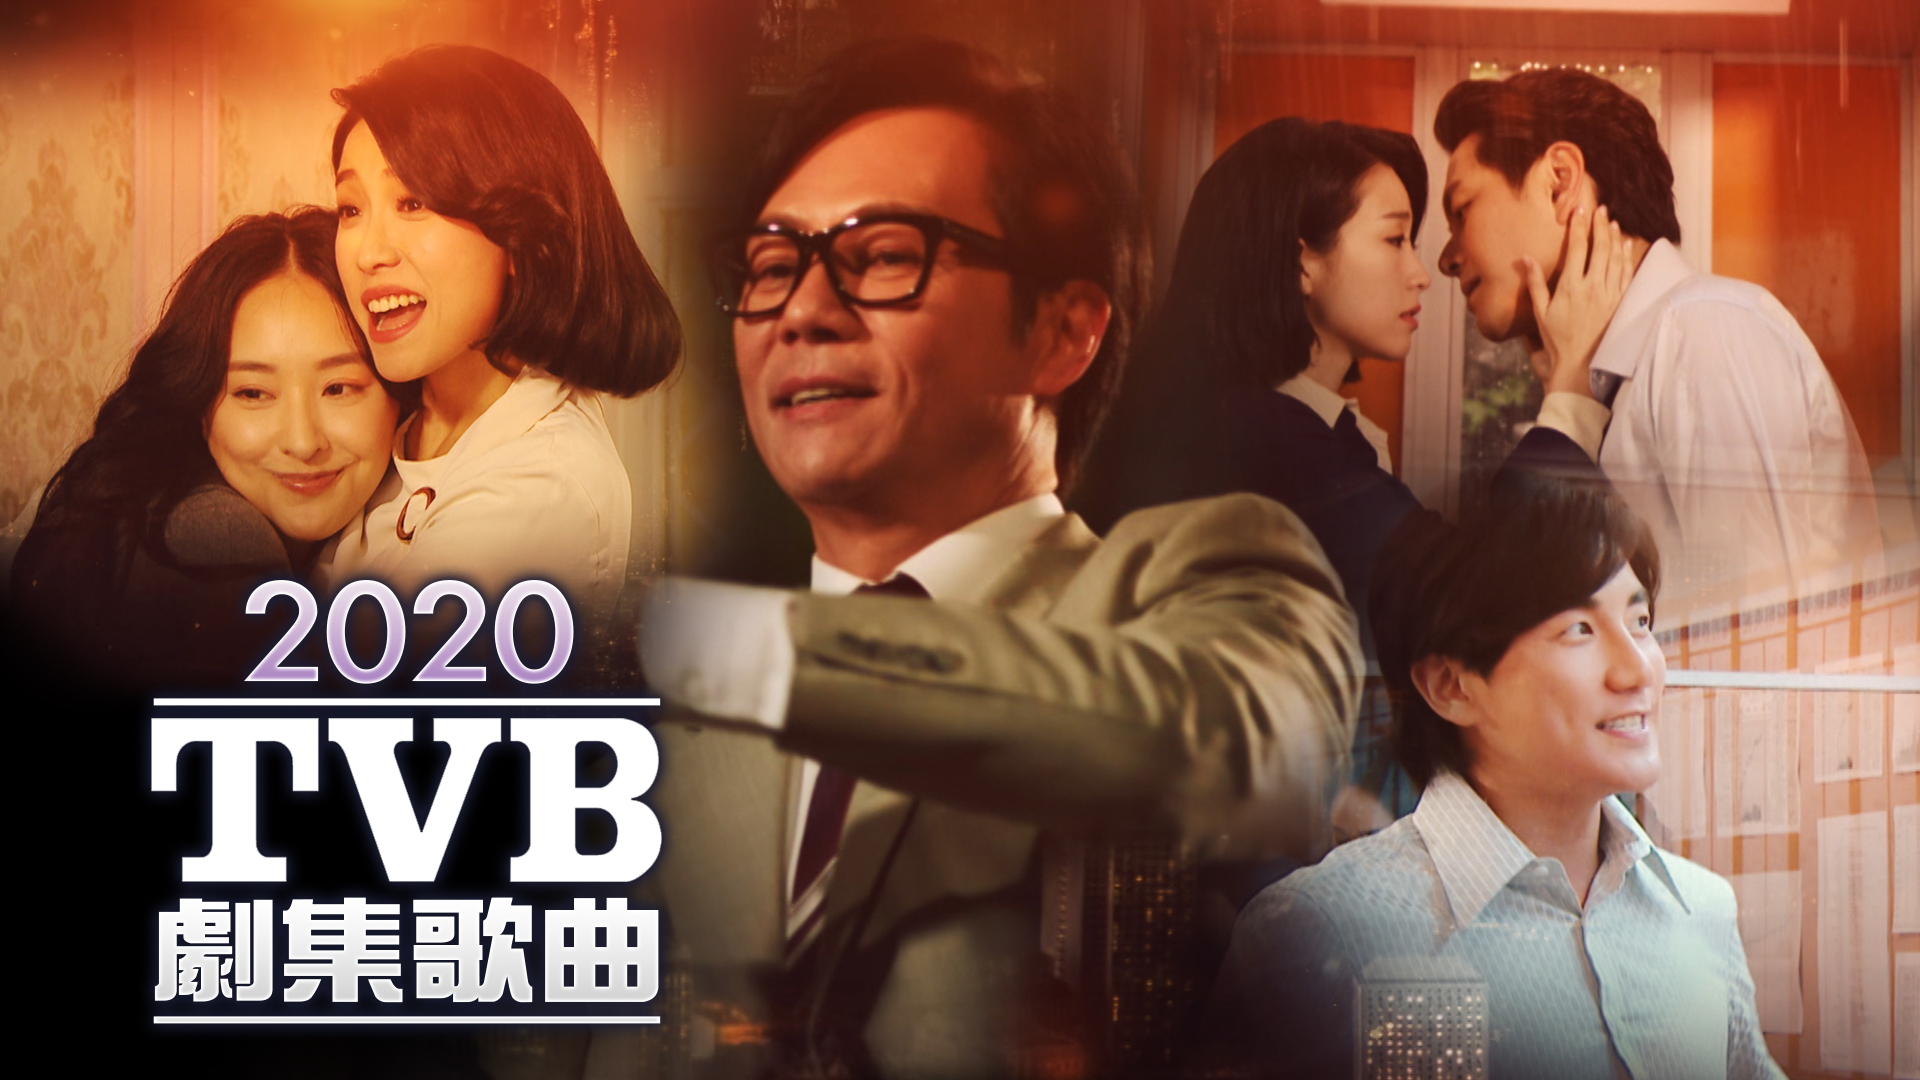 2020 TVB 剧集歌曲 [TS源码/1080P/2.87G]-金曲拾光机 - MusiCore@乐影带